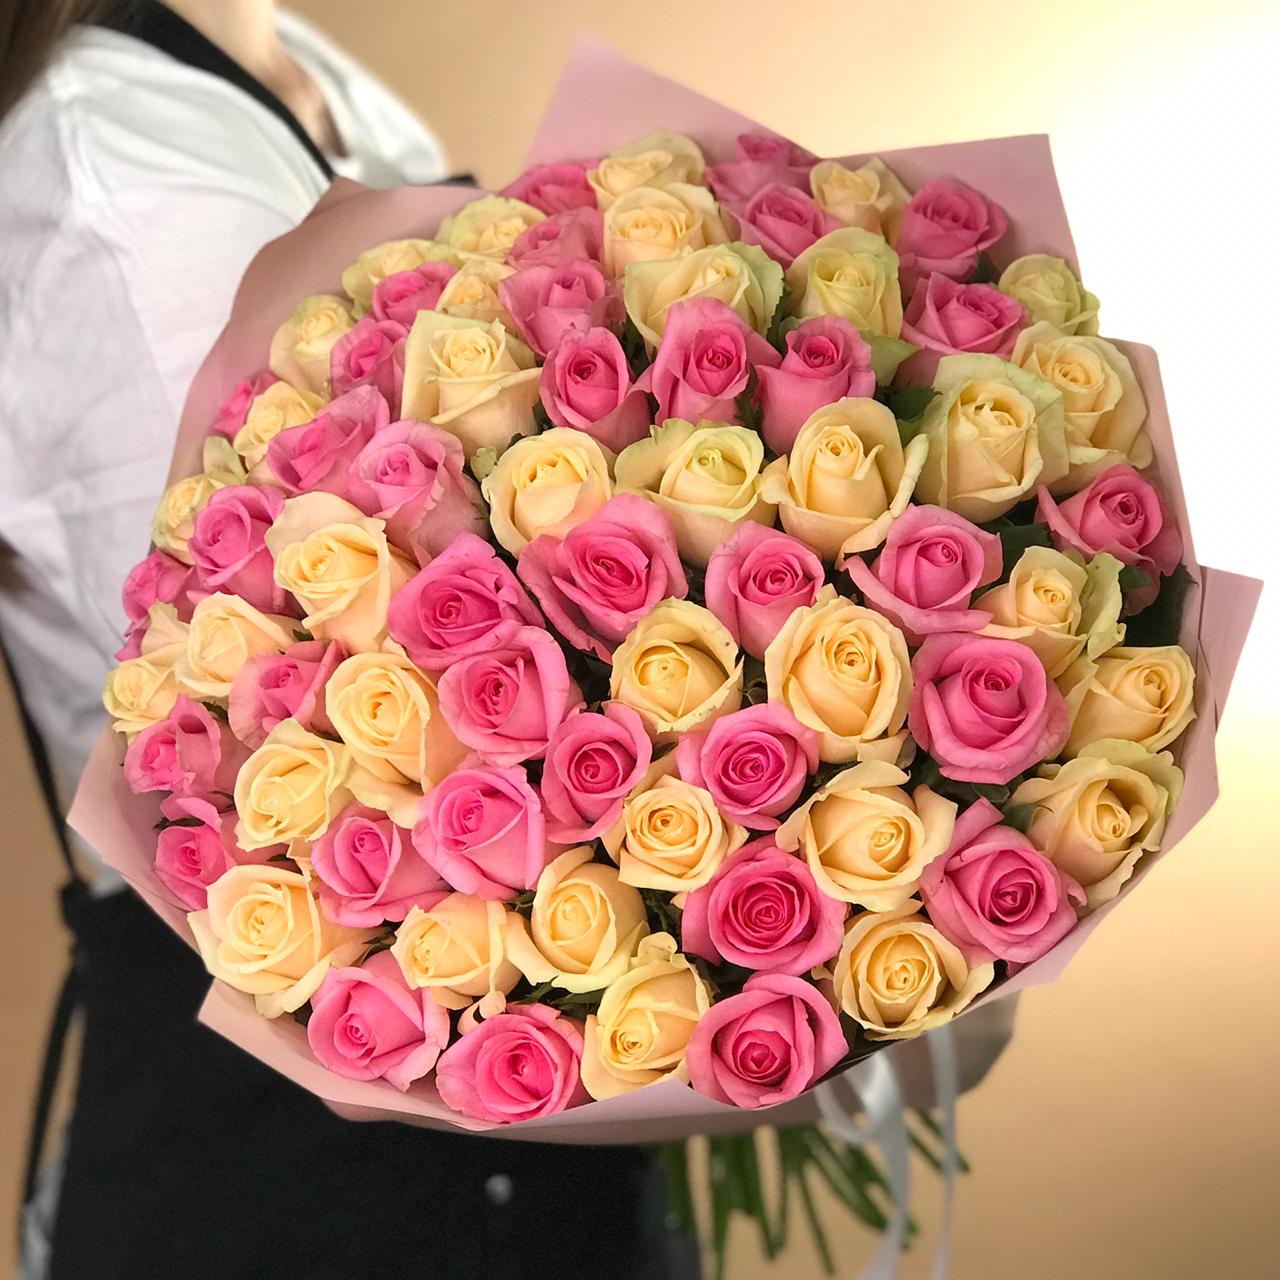 Букет из кремовых и розовых роз 71 шт. (60 см) букет из кремовых и розовых роз 71 шт 60 см